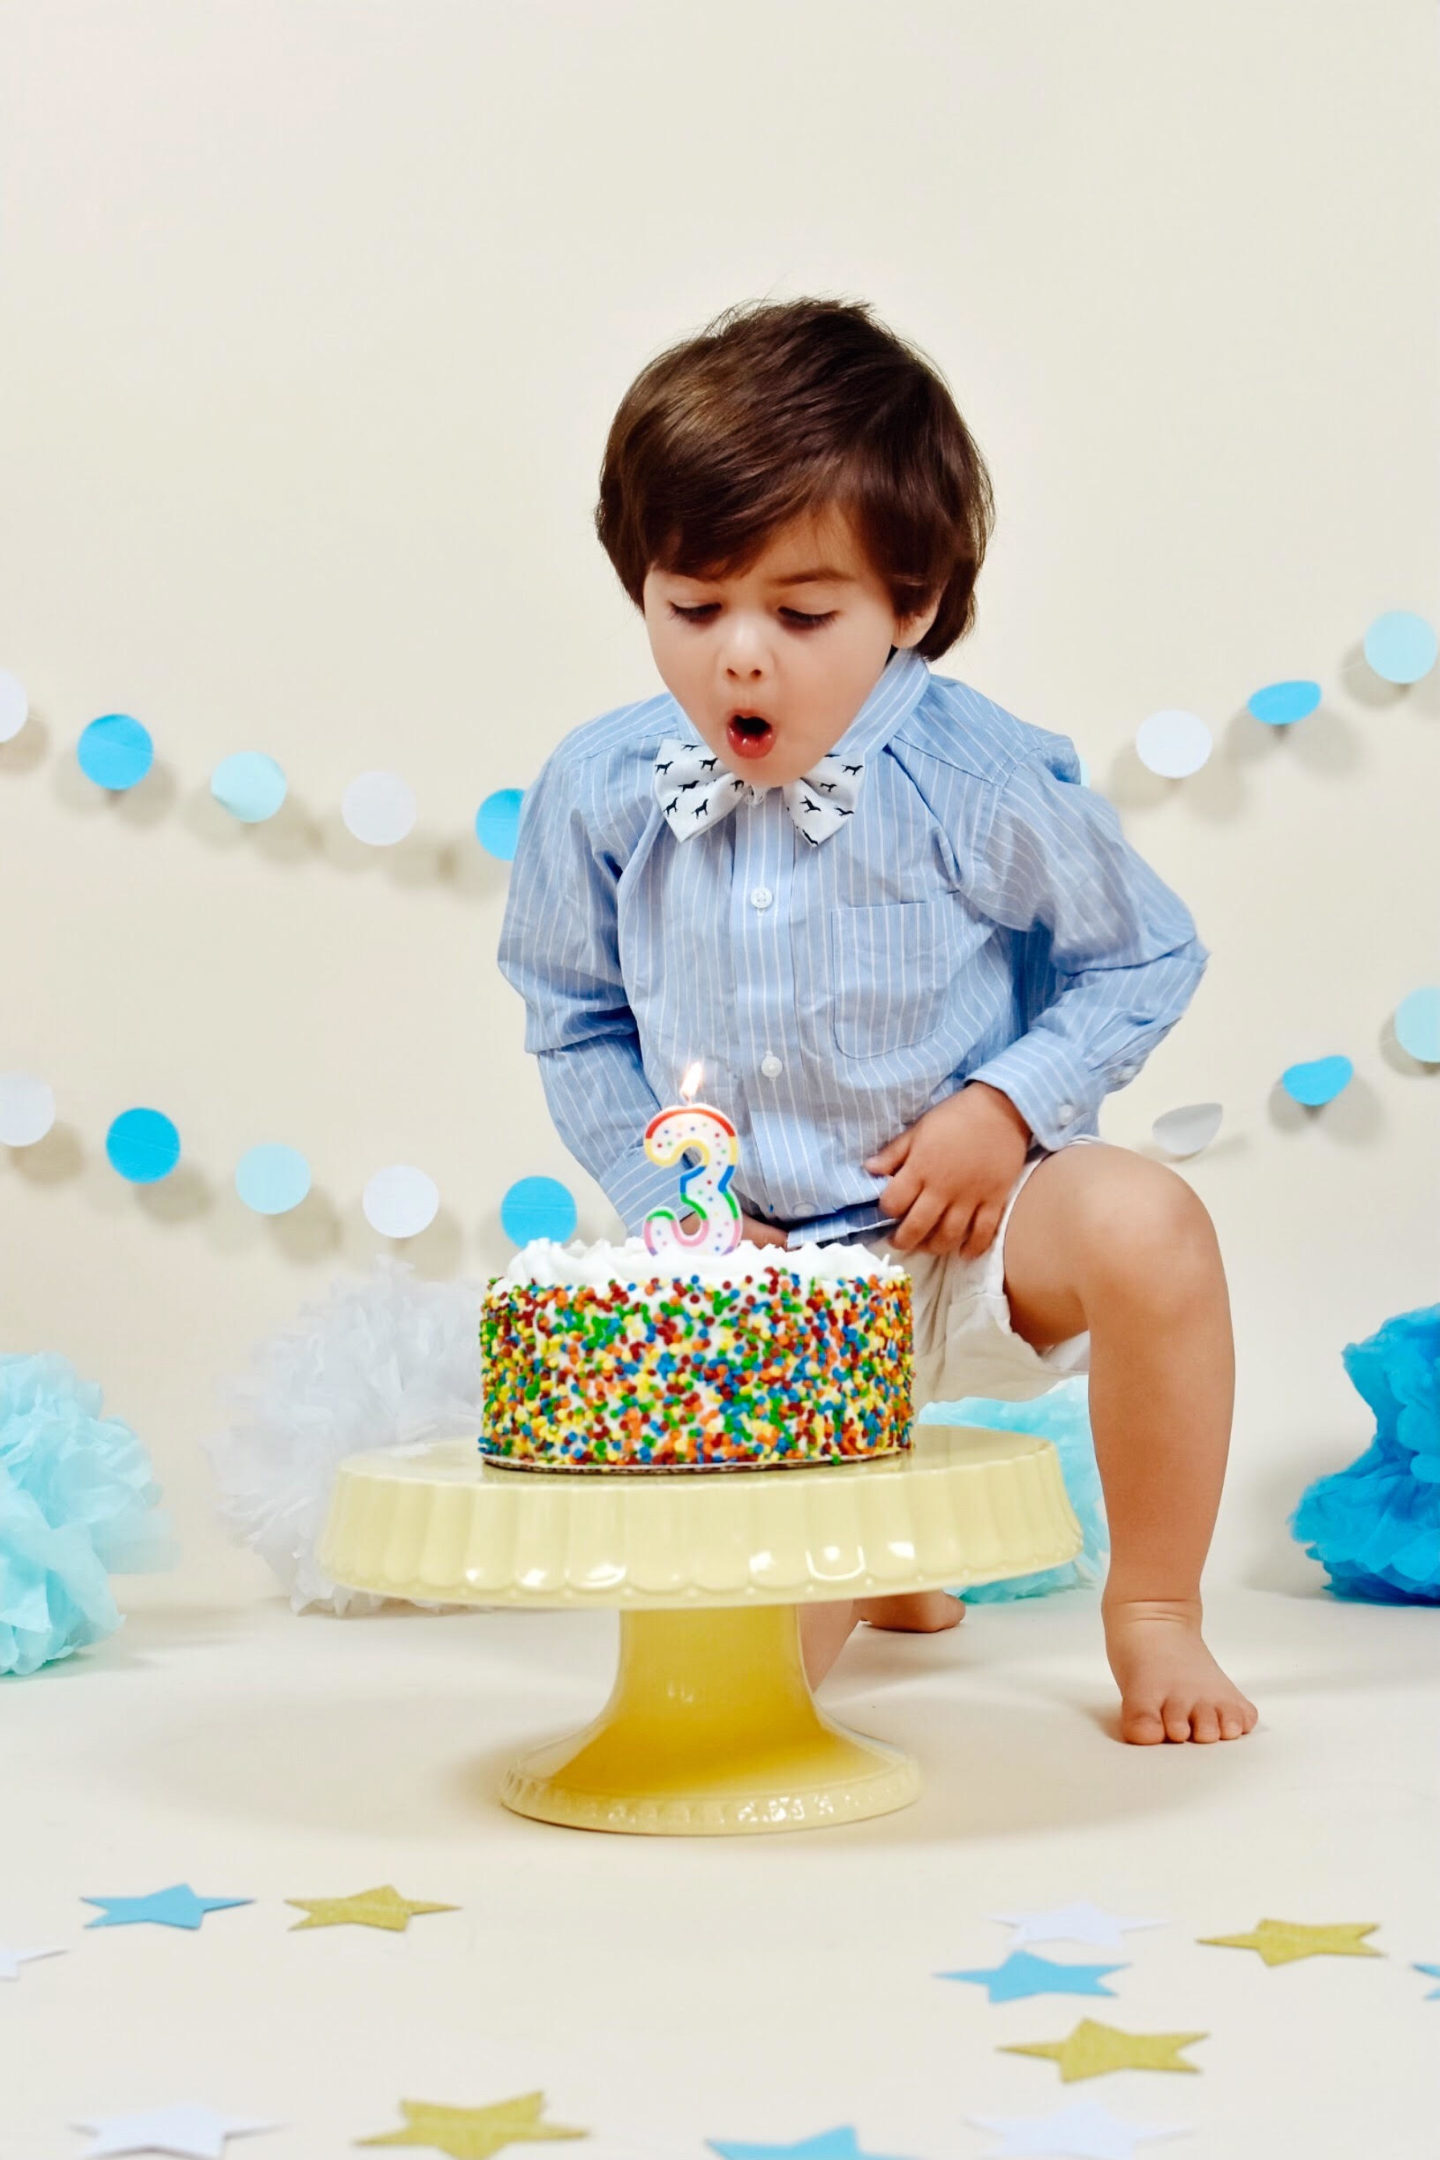  third-birthday-cake-jaxson-son-vanessa-lambert-whatwouldvwear